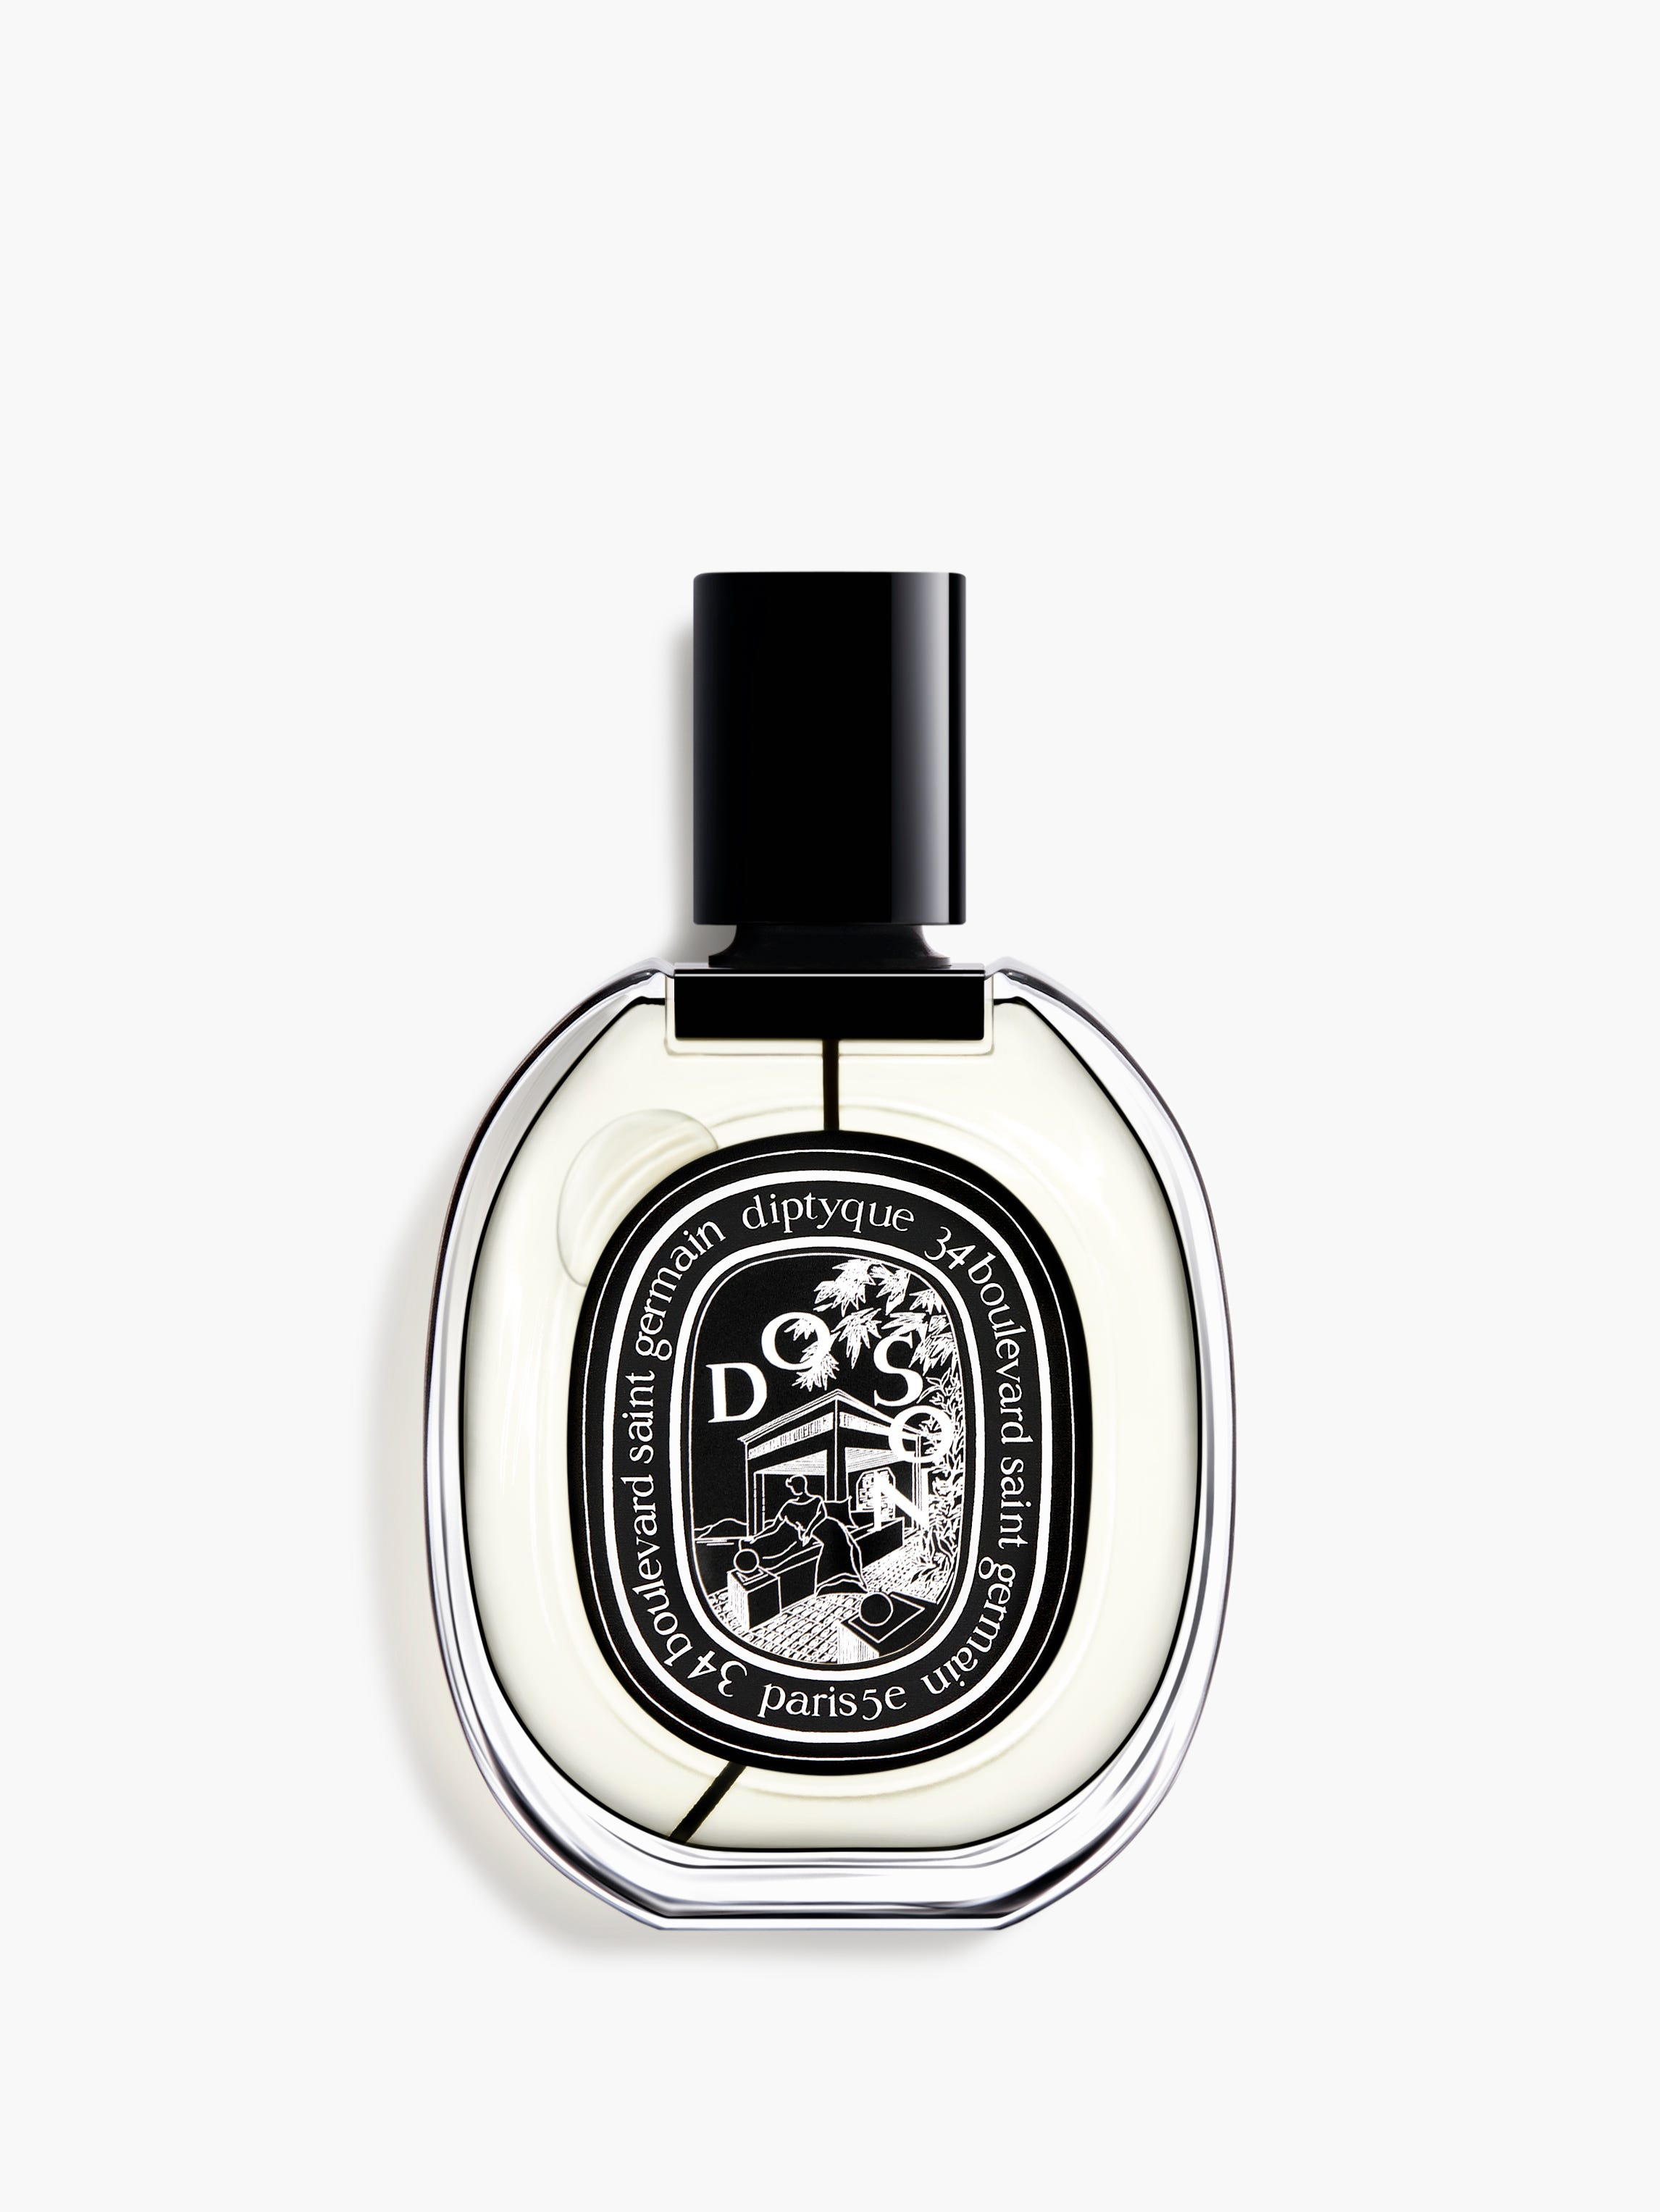 Do Son - Eau de parfum 75ml | Diptyque Paris